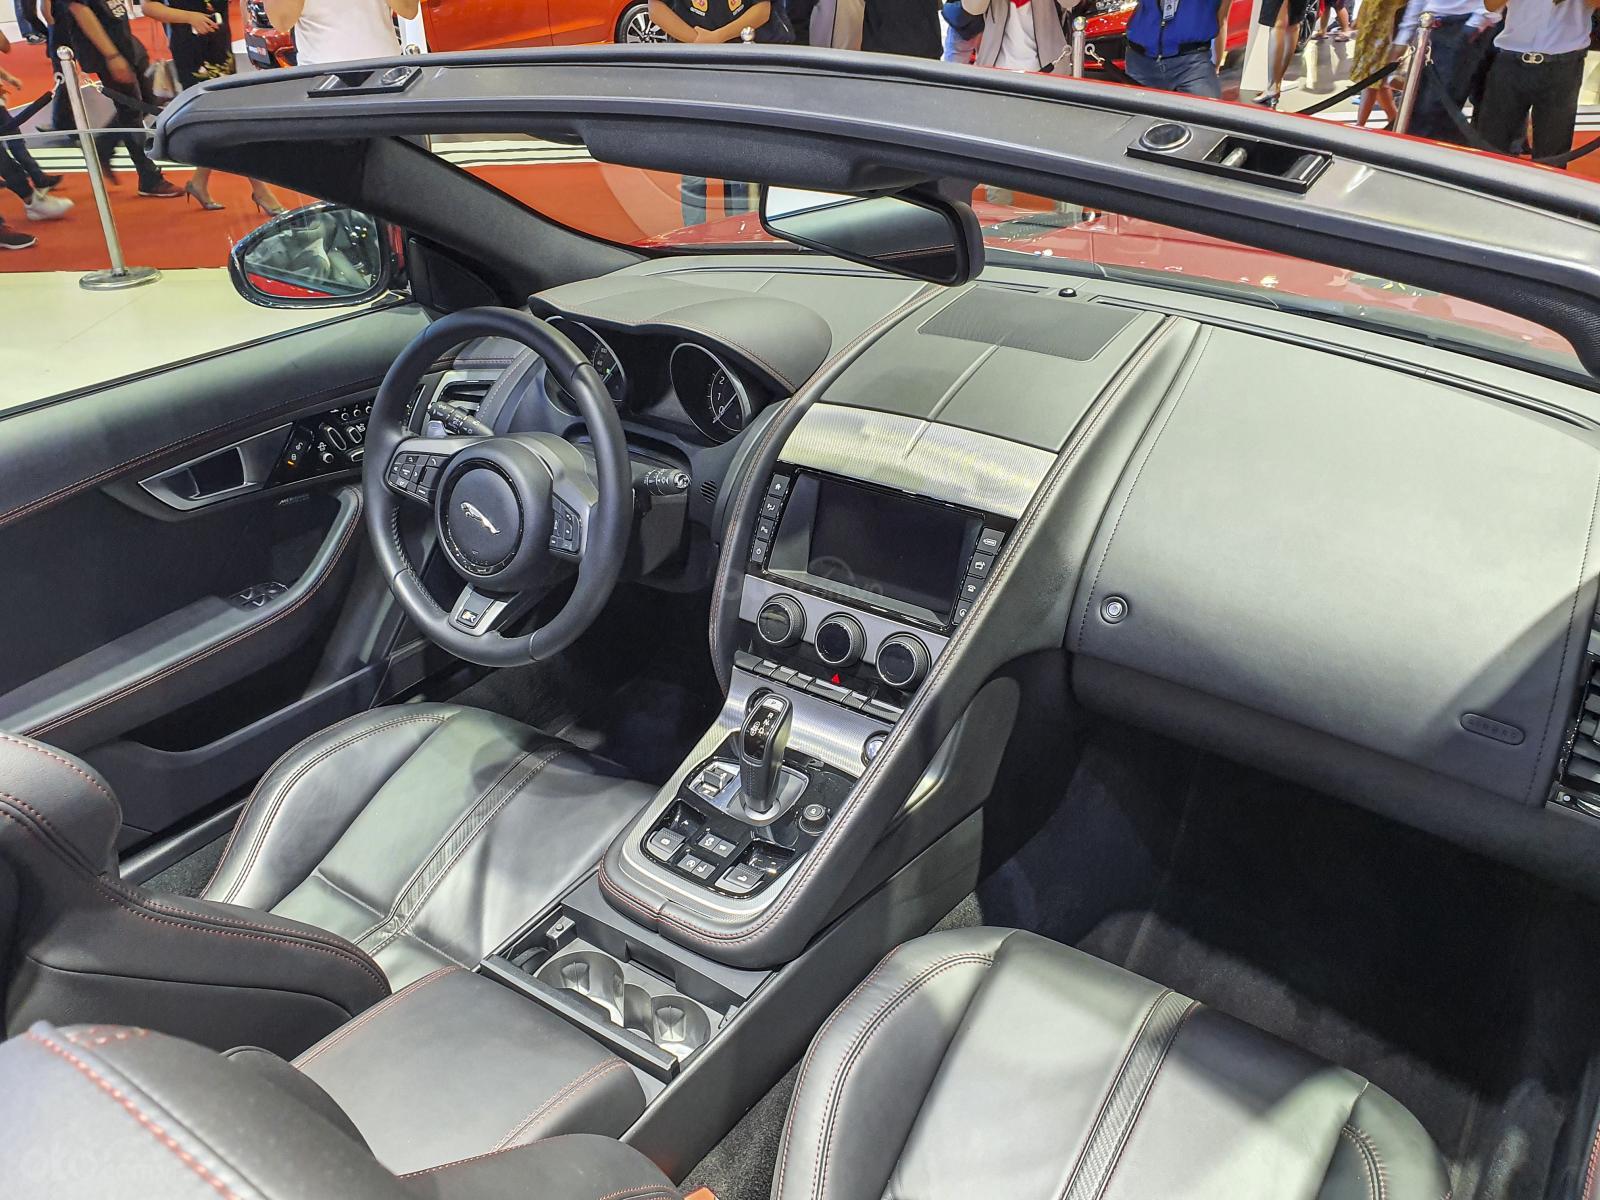 [VMS 2019] Jaguar F-Type R Convertible giá hơn 13 tỷ đồng xuất hiện nổi bật tại gian hàng "báo gấm" - Ảnh 7.